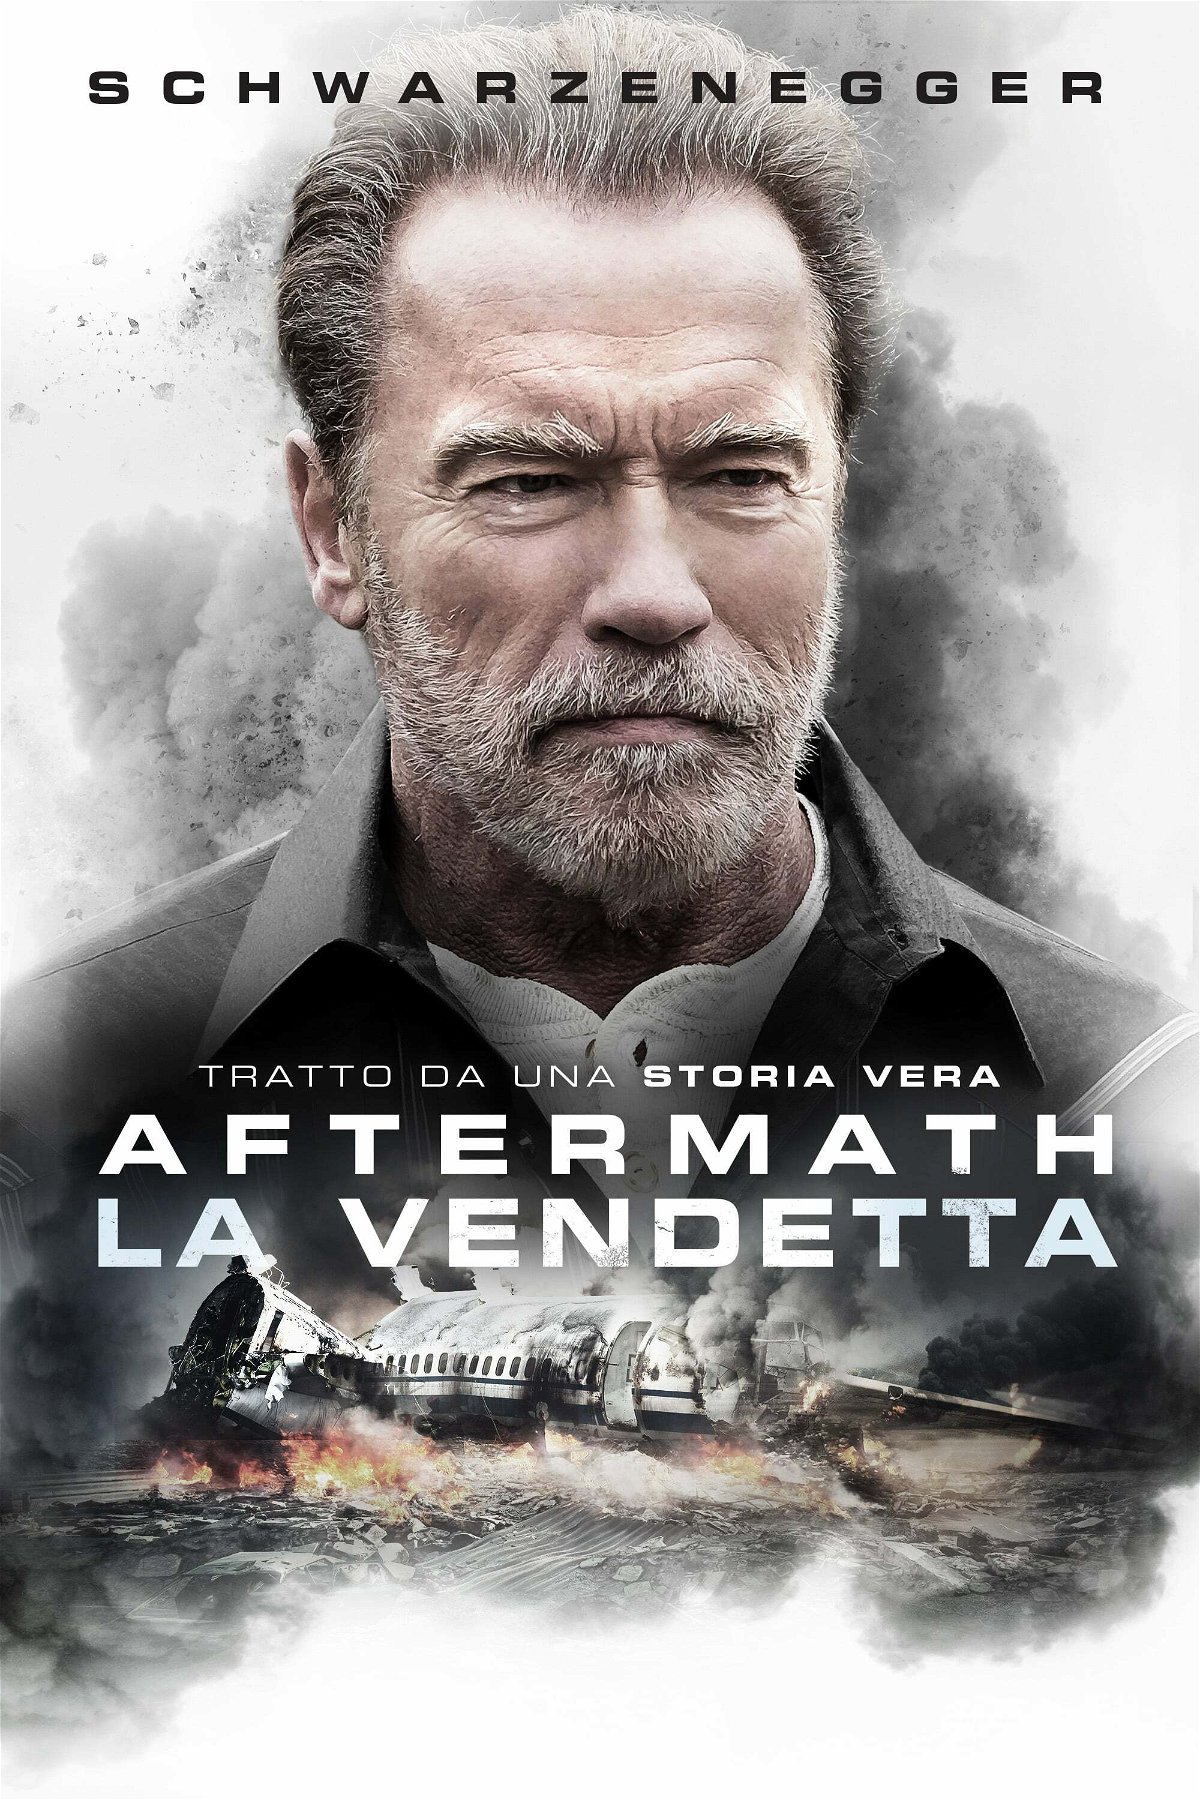 Aftermath - La vendetta, poster